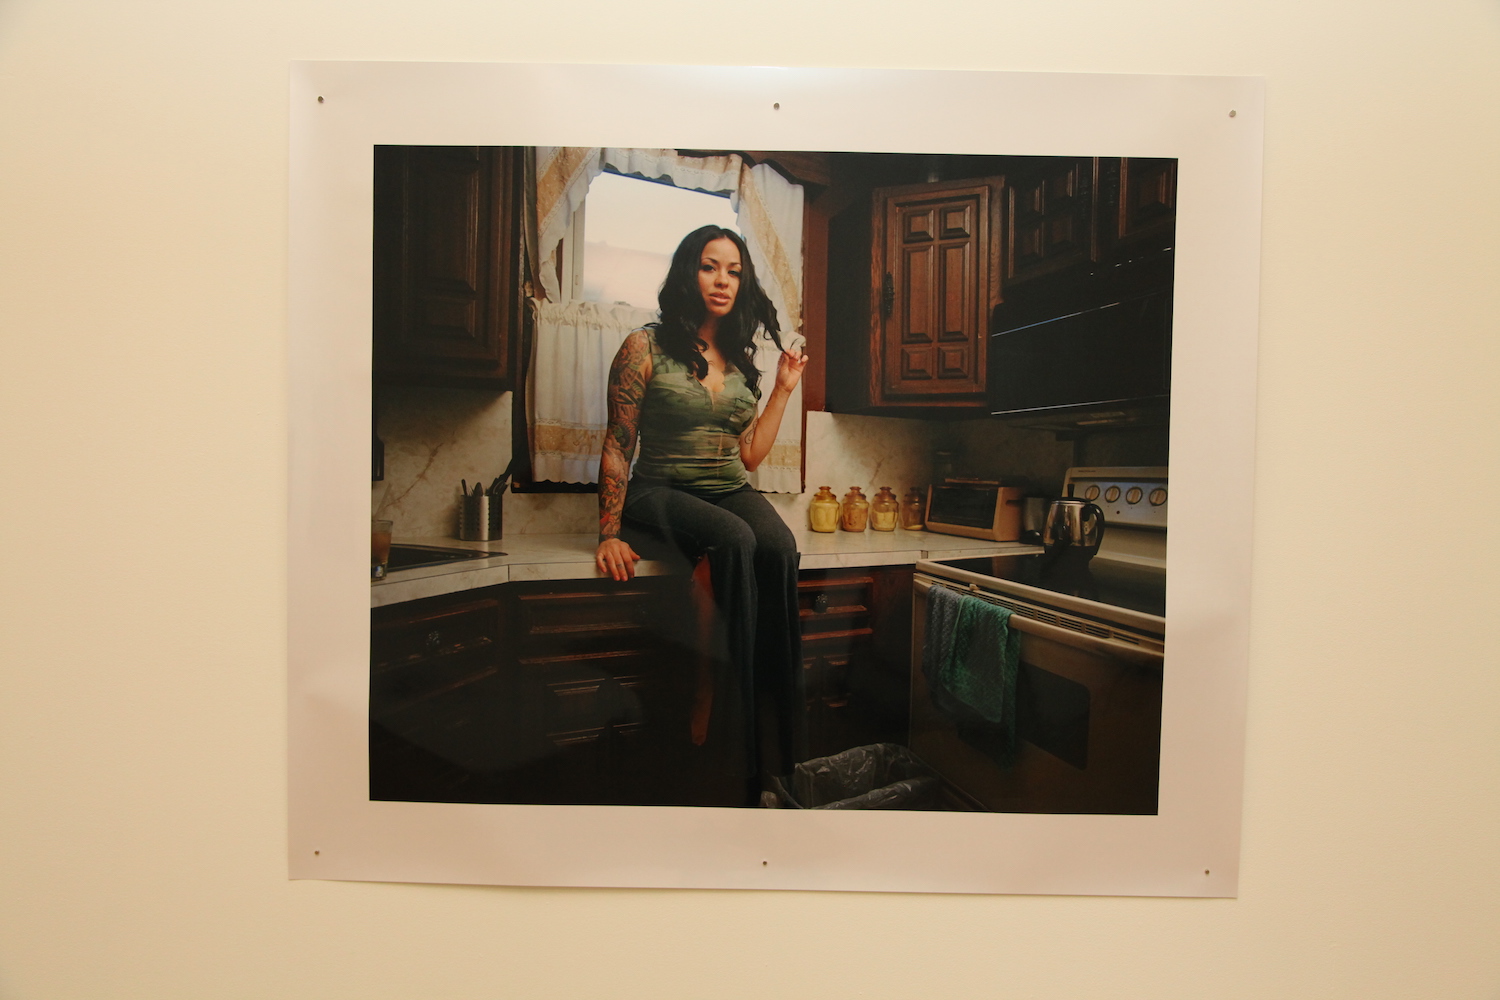 Katrina del Mar, *Teresa in the kitchen, Jackson Heights, NY, 2011.*